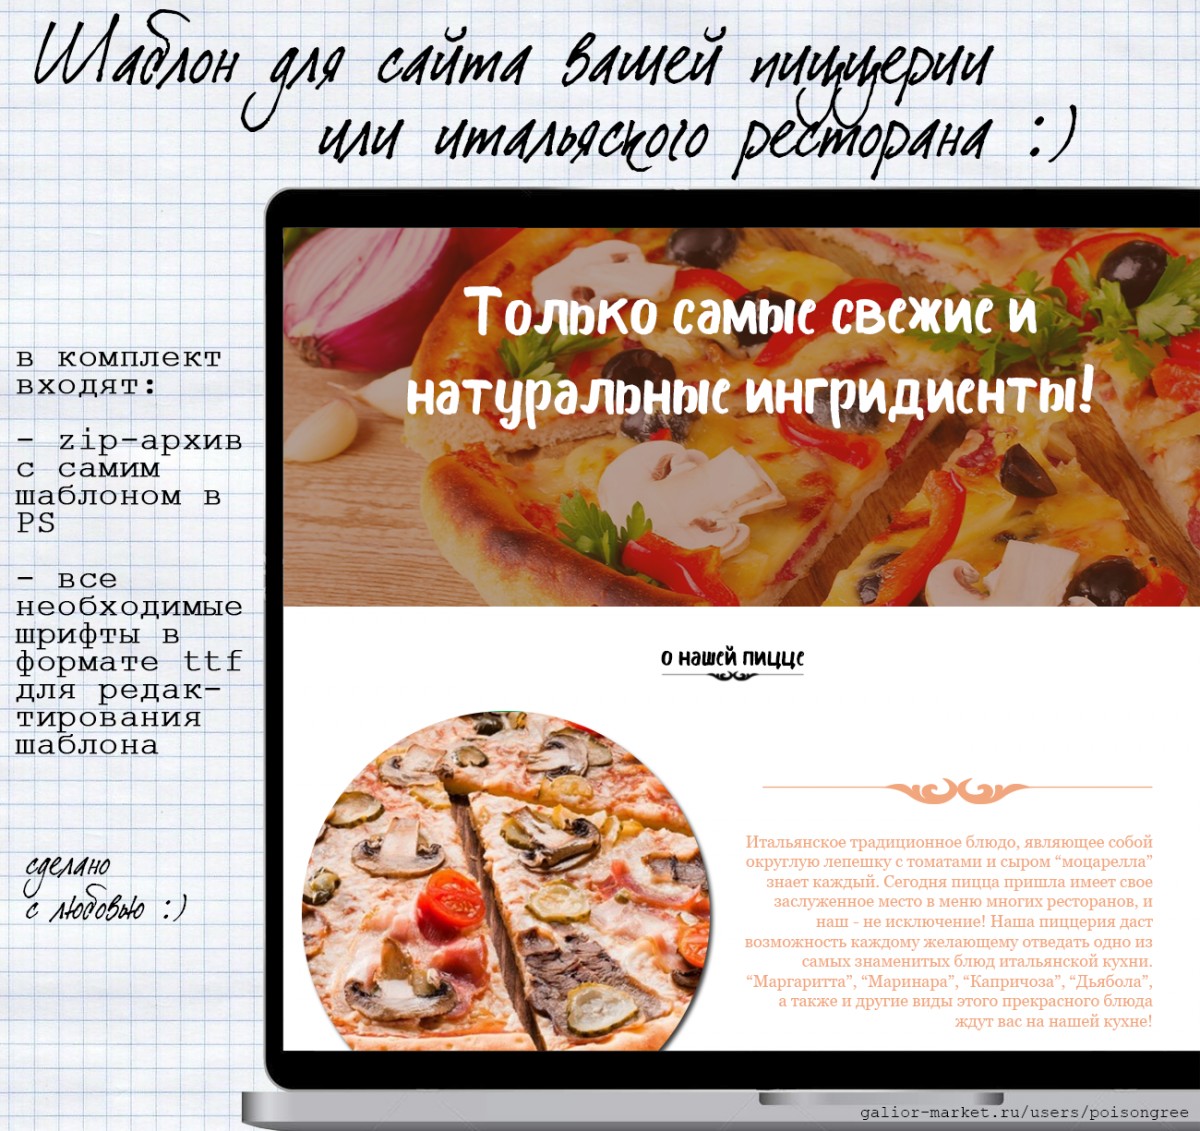 Шаблон для сайта пиццерии\ресторана итальянской кухни